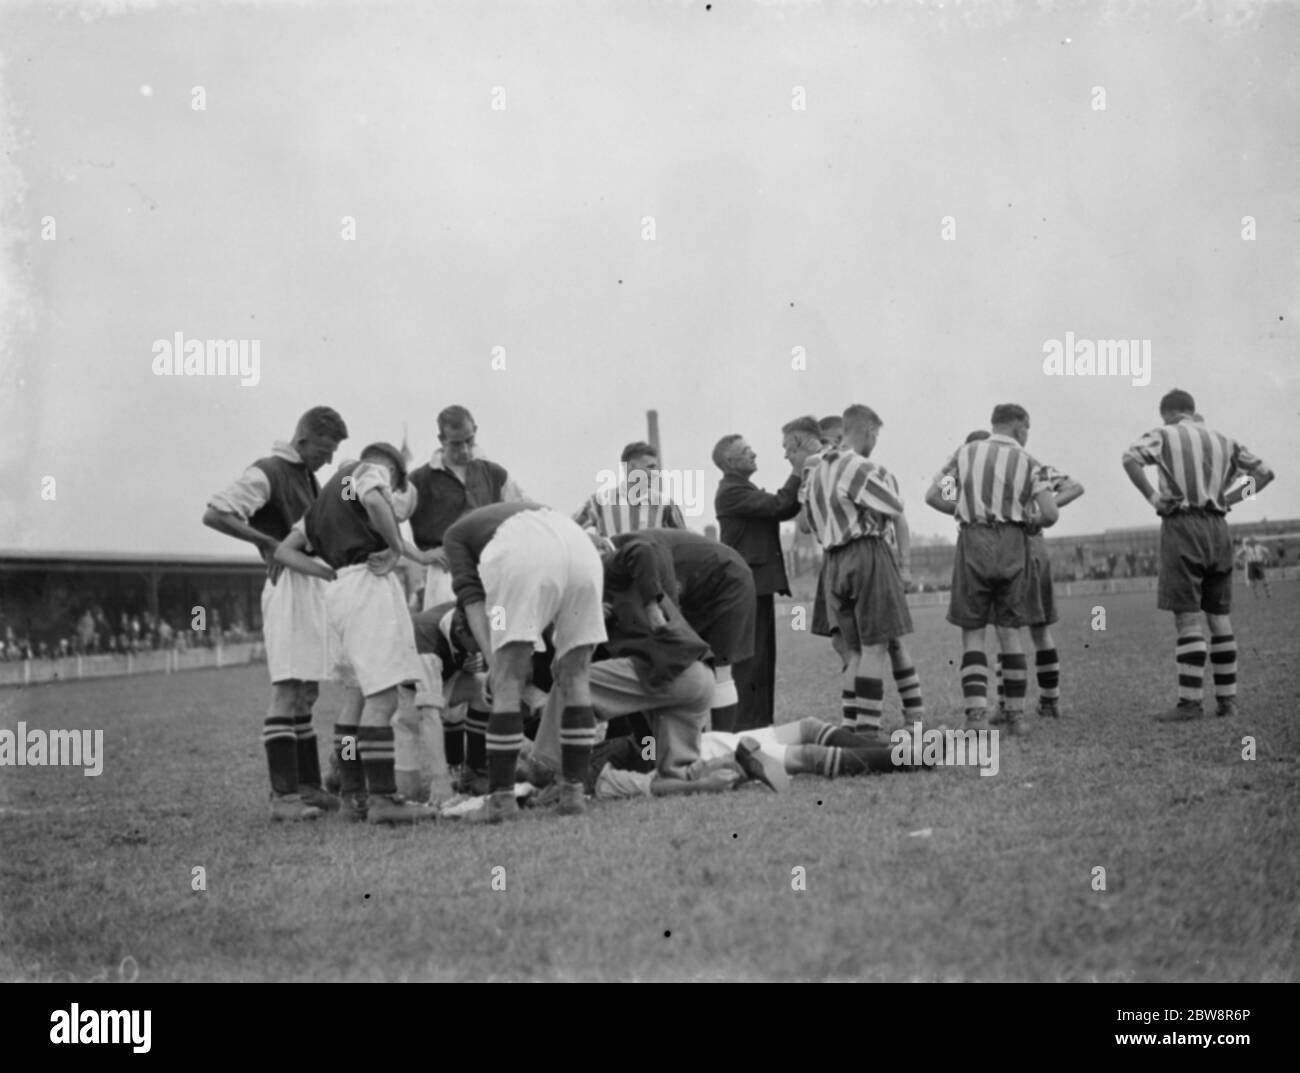 Dartford Reservas vs. Ashford Town - Kent League - 03/09/38 el partido se detiene para proporcionar primeros auxilios al jugador lesionado. 1938 Foto de stock